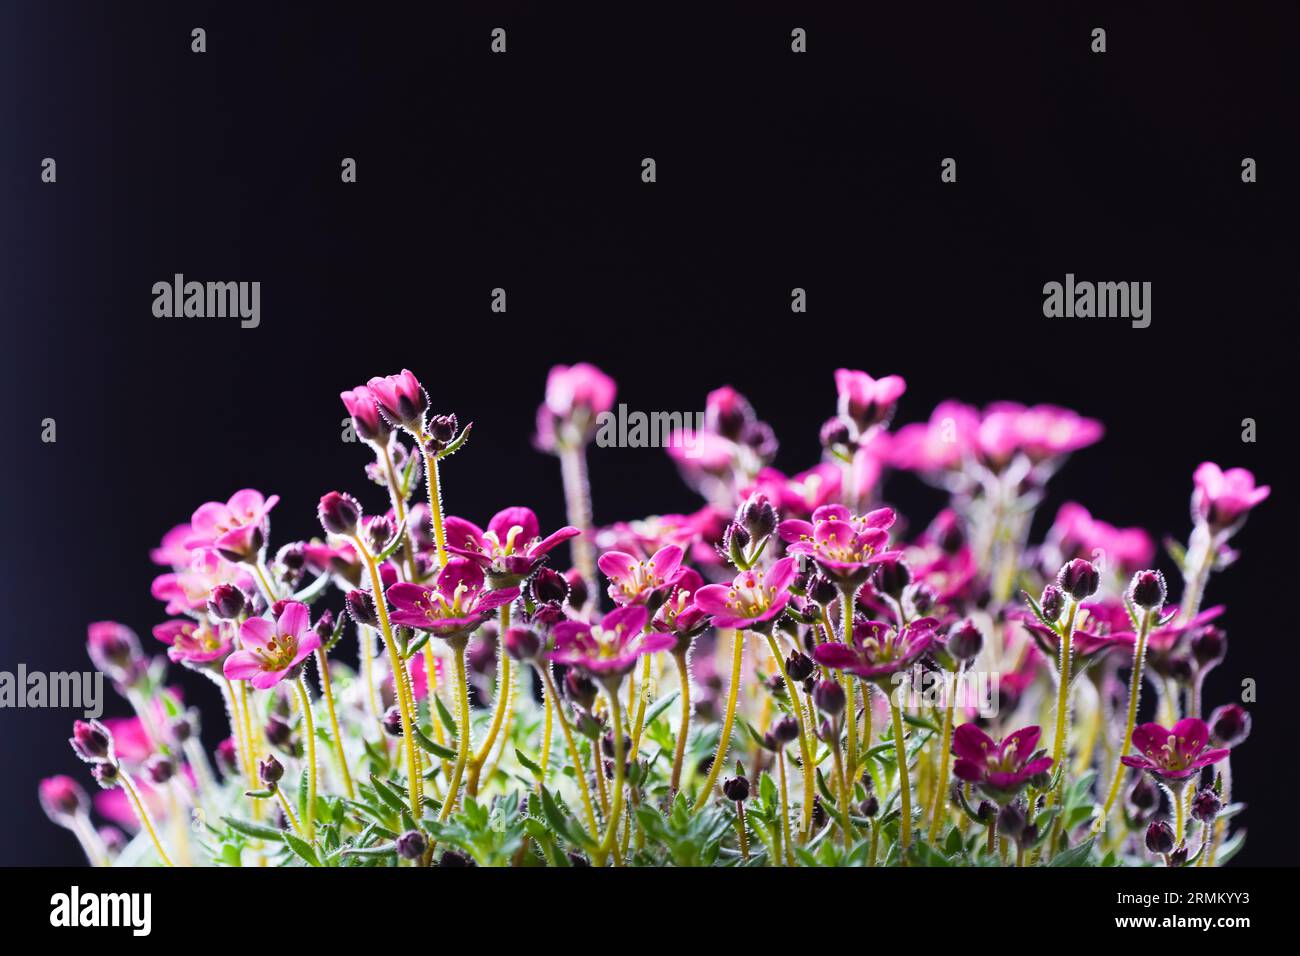 Pink saxifrage flowers. Flowering plant. Saxifraga. Stock Photo